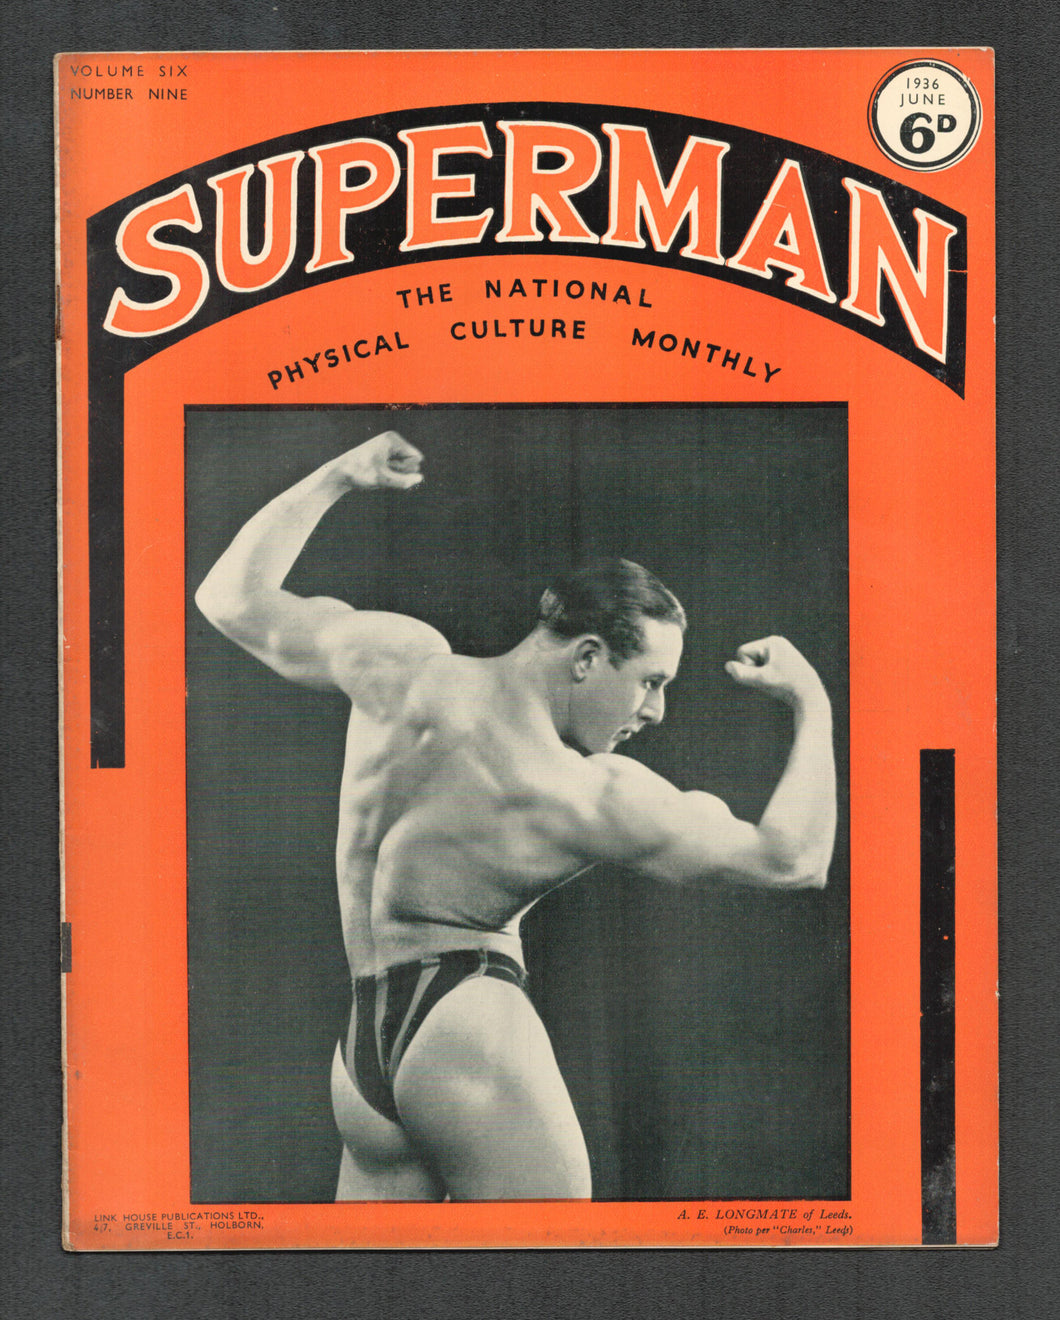 Superman Vol 6 No 9 June 1936